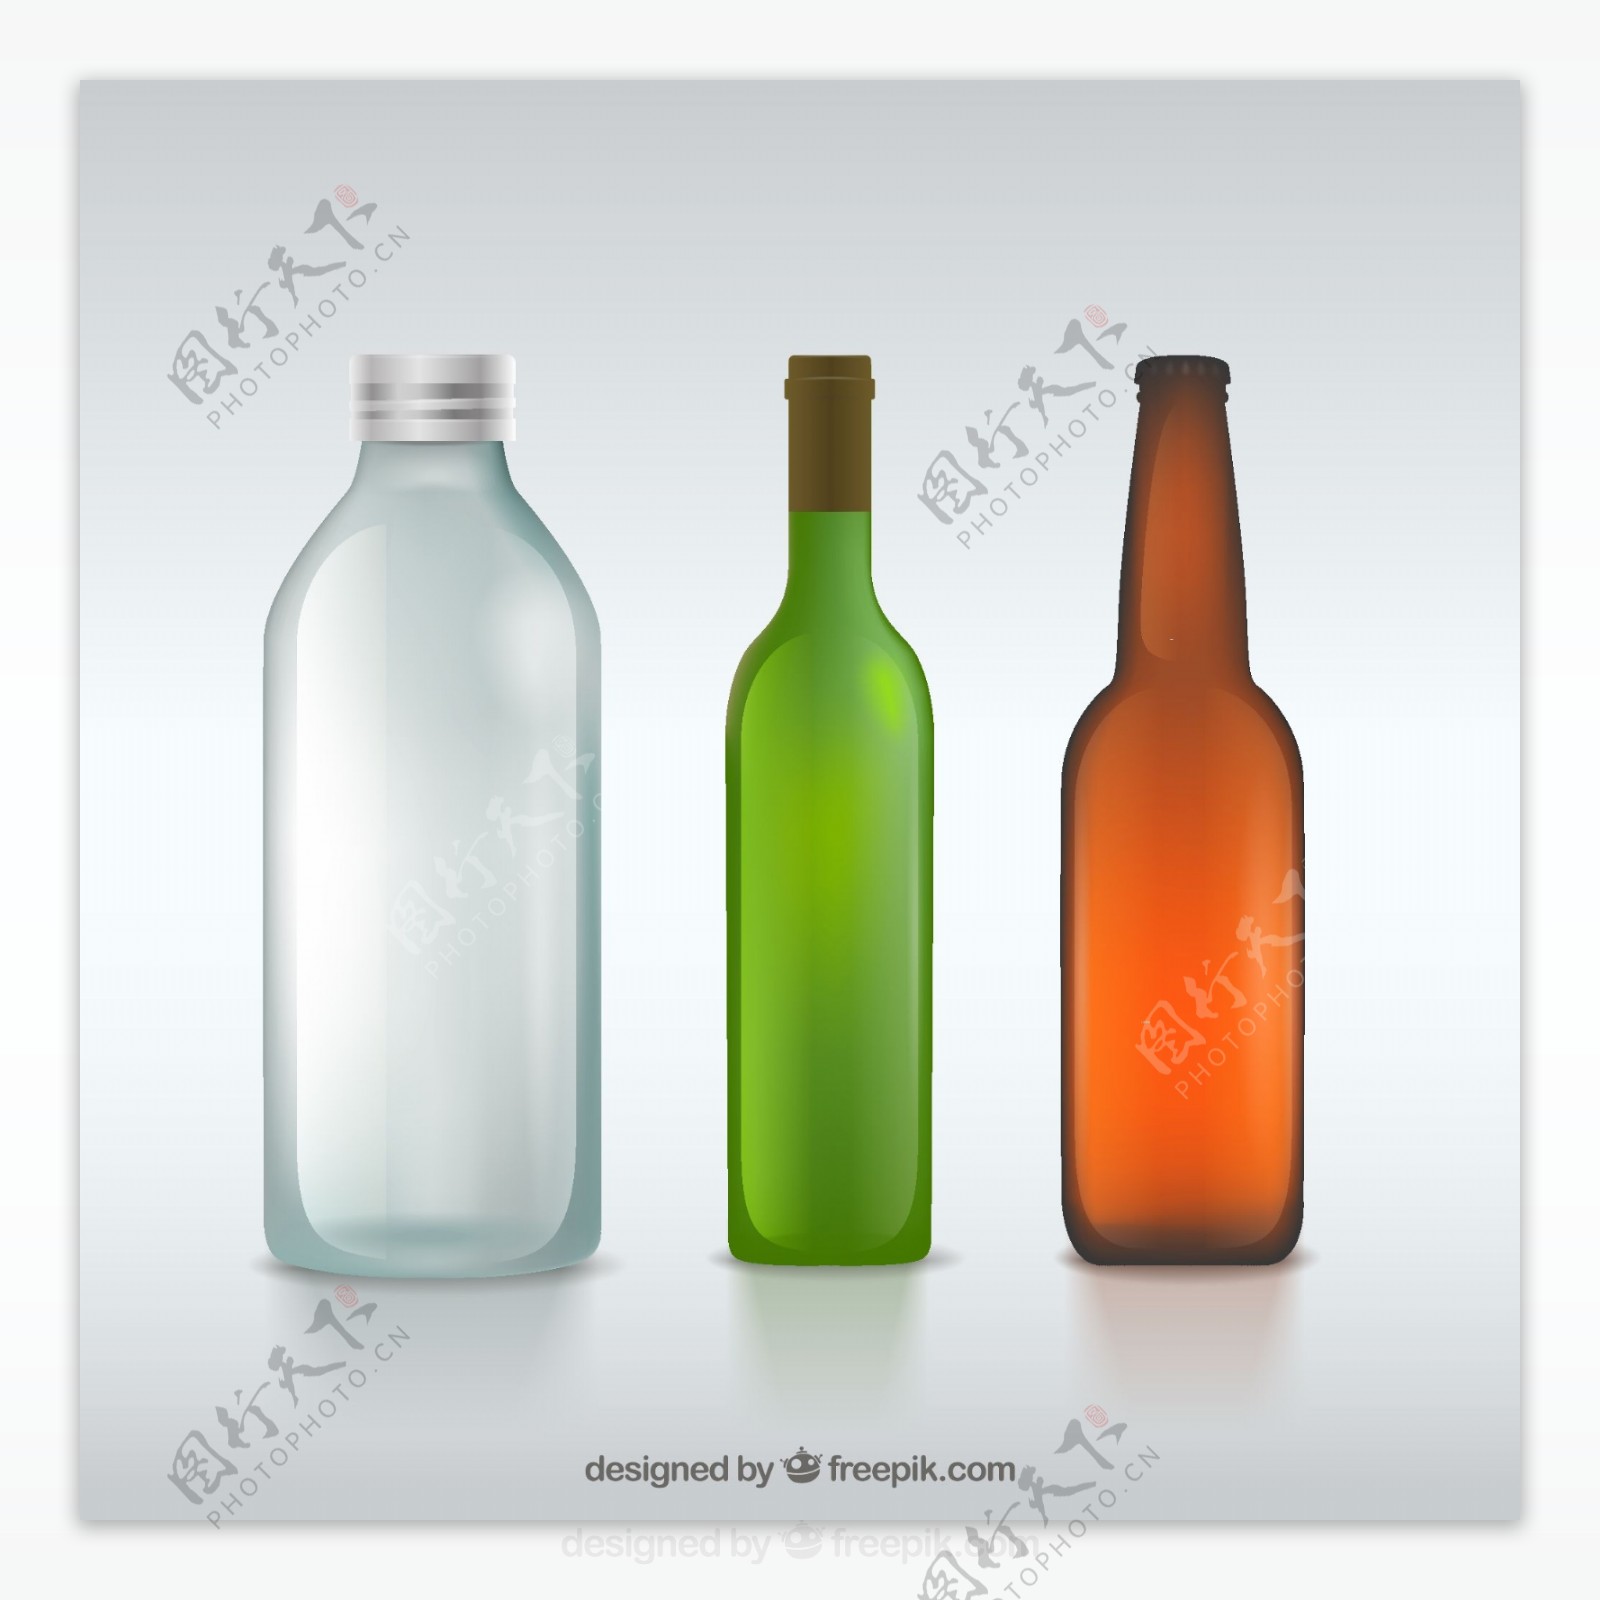 3款精美酒瓶设计矢量图